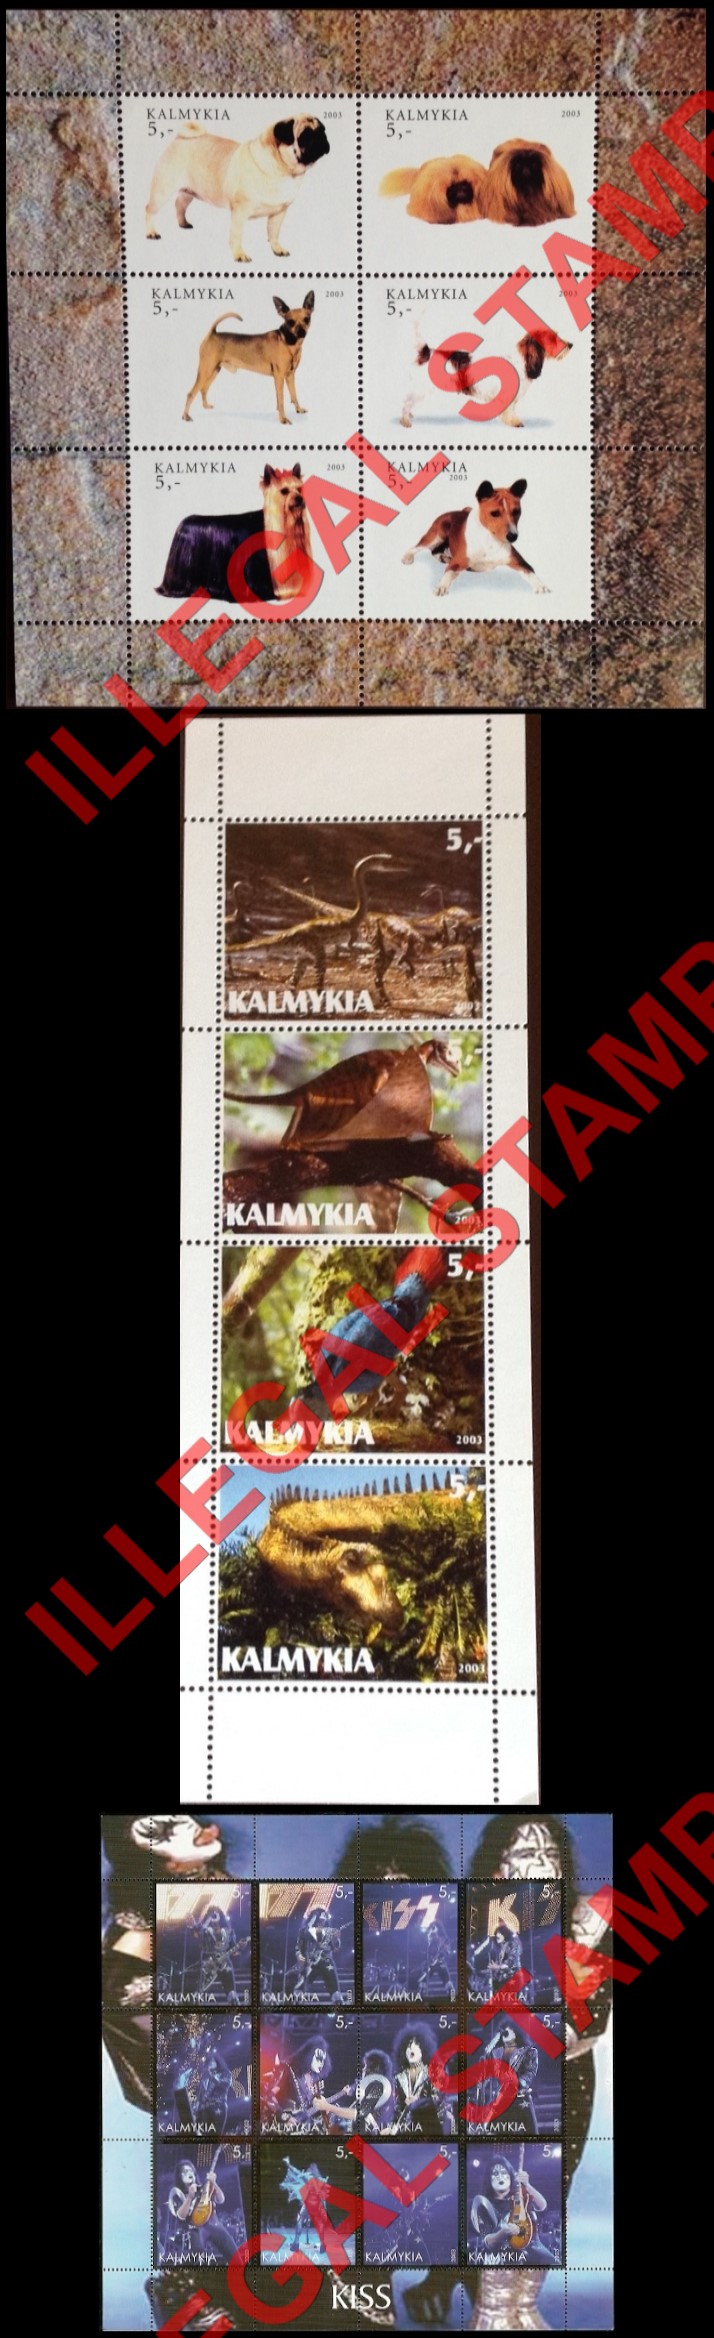 Republic of Kalmykia 2003 Illegal Stamps